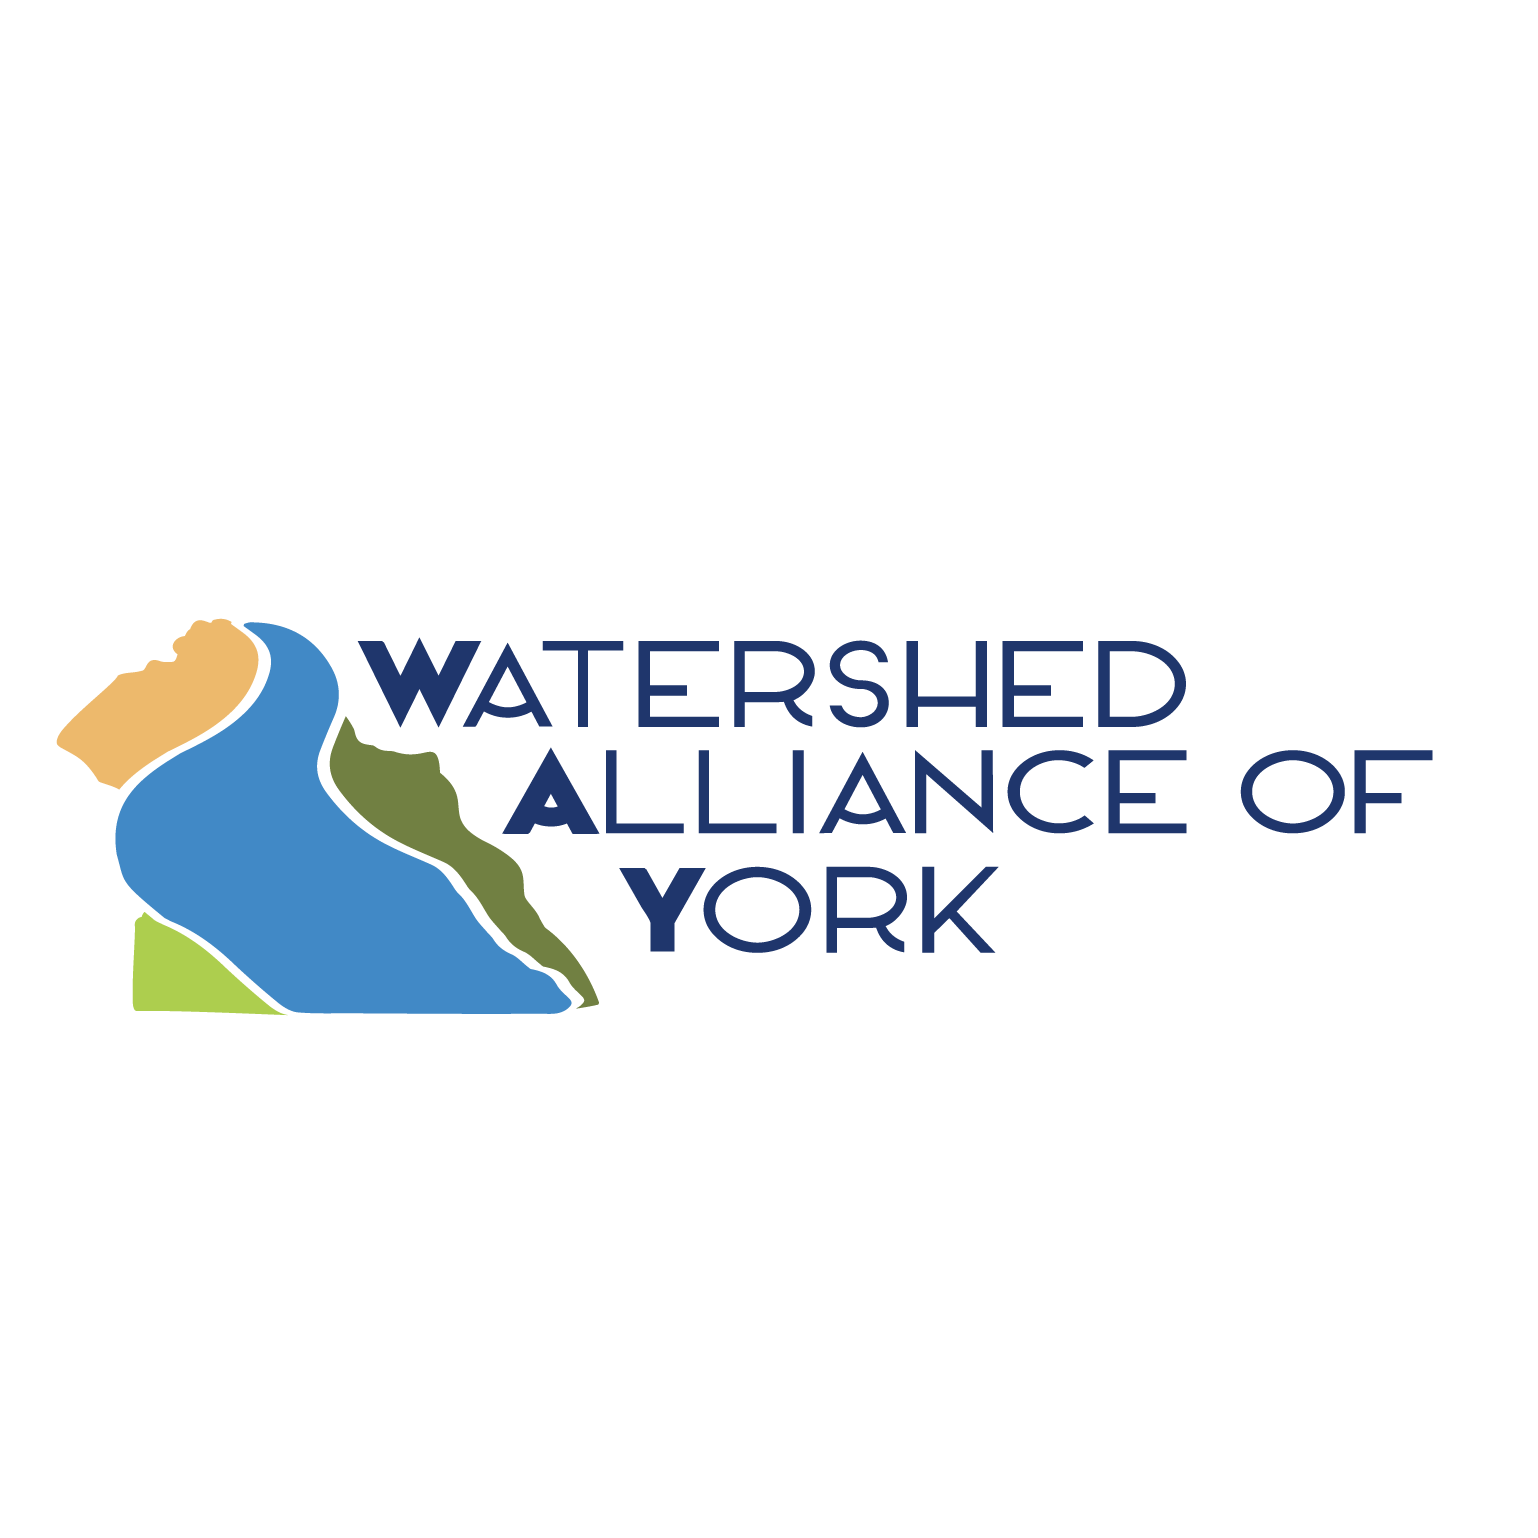 Speaker: Watershed Alliance of York (WAY)